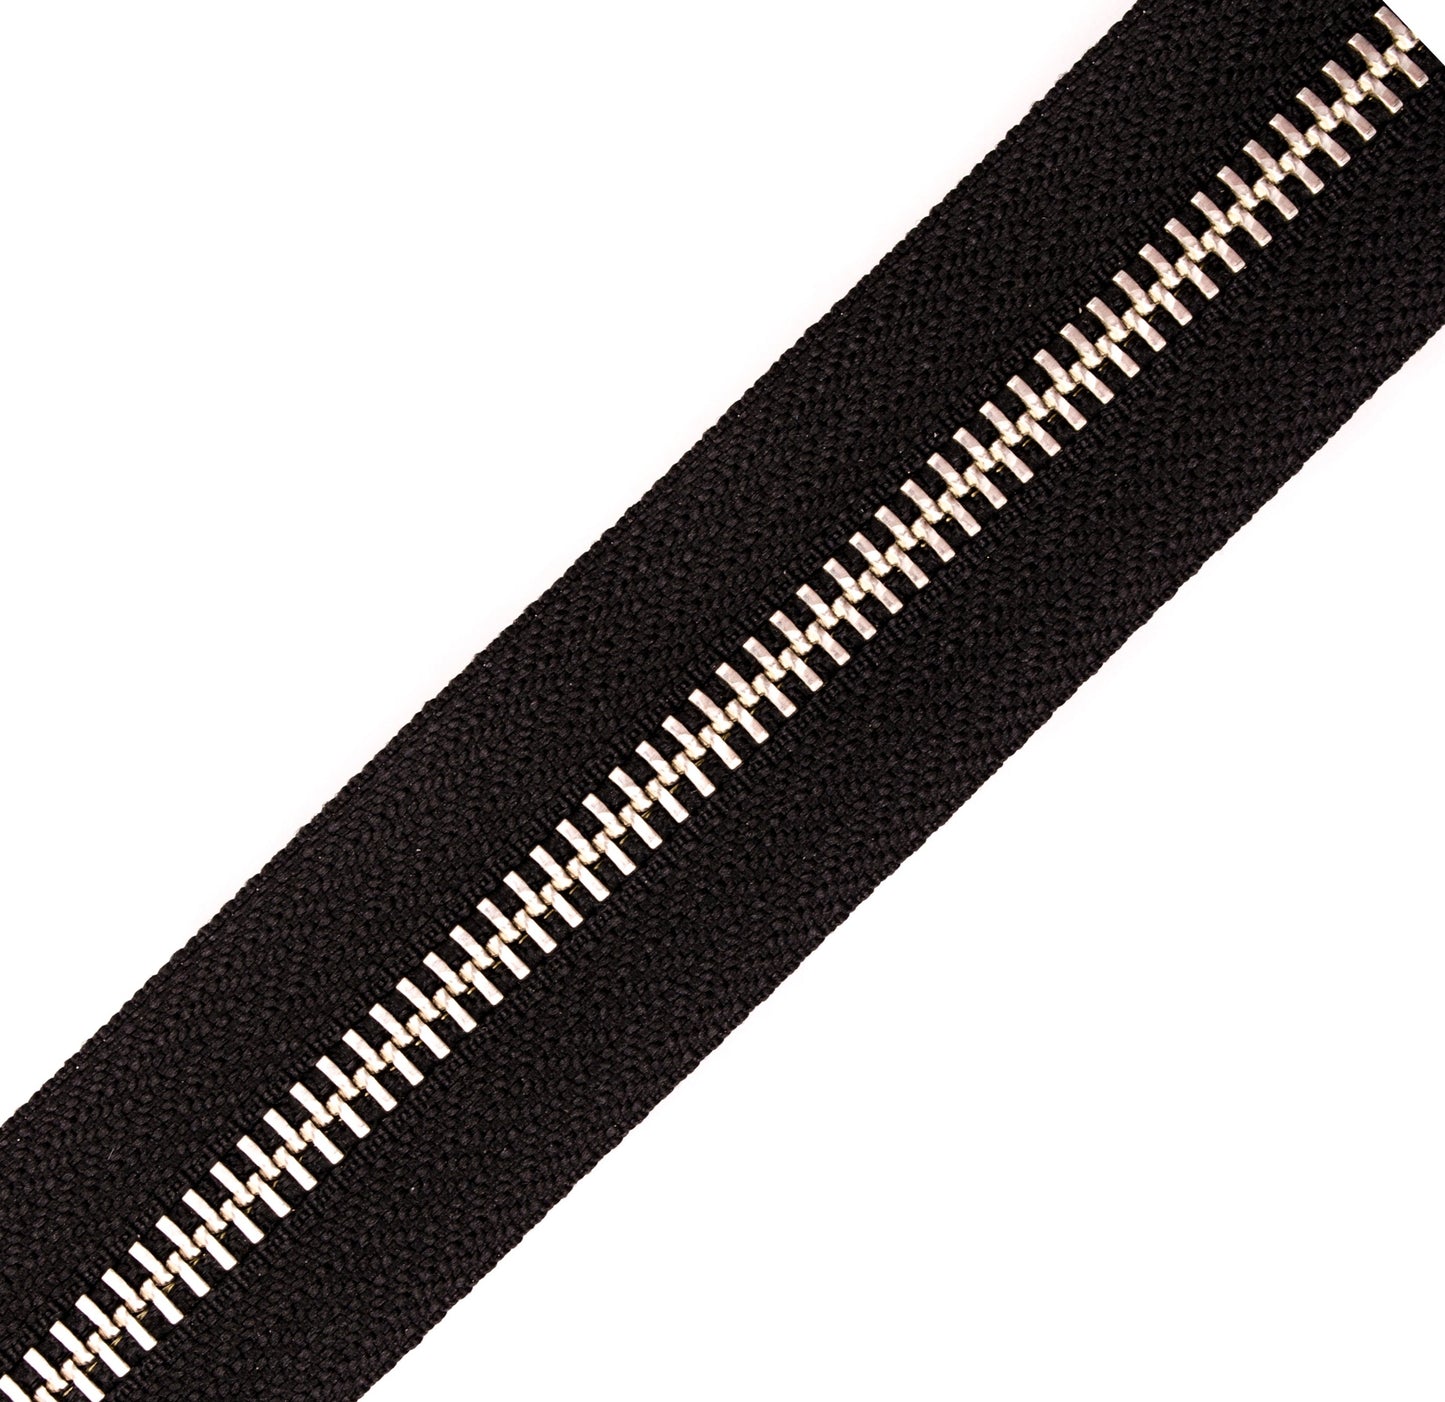 Metal YKK zipper 5RMN (580) Black